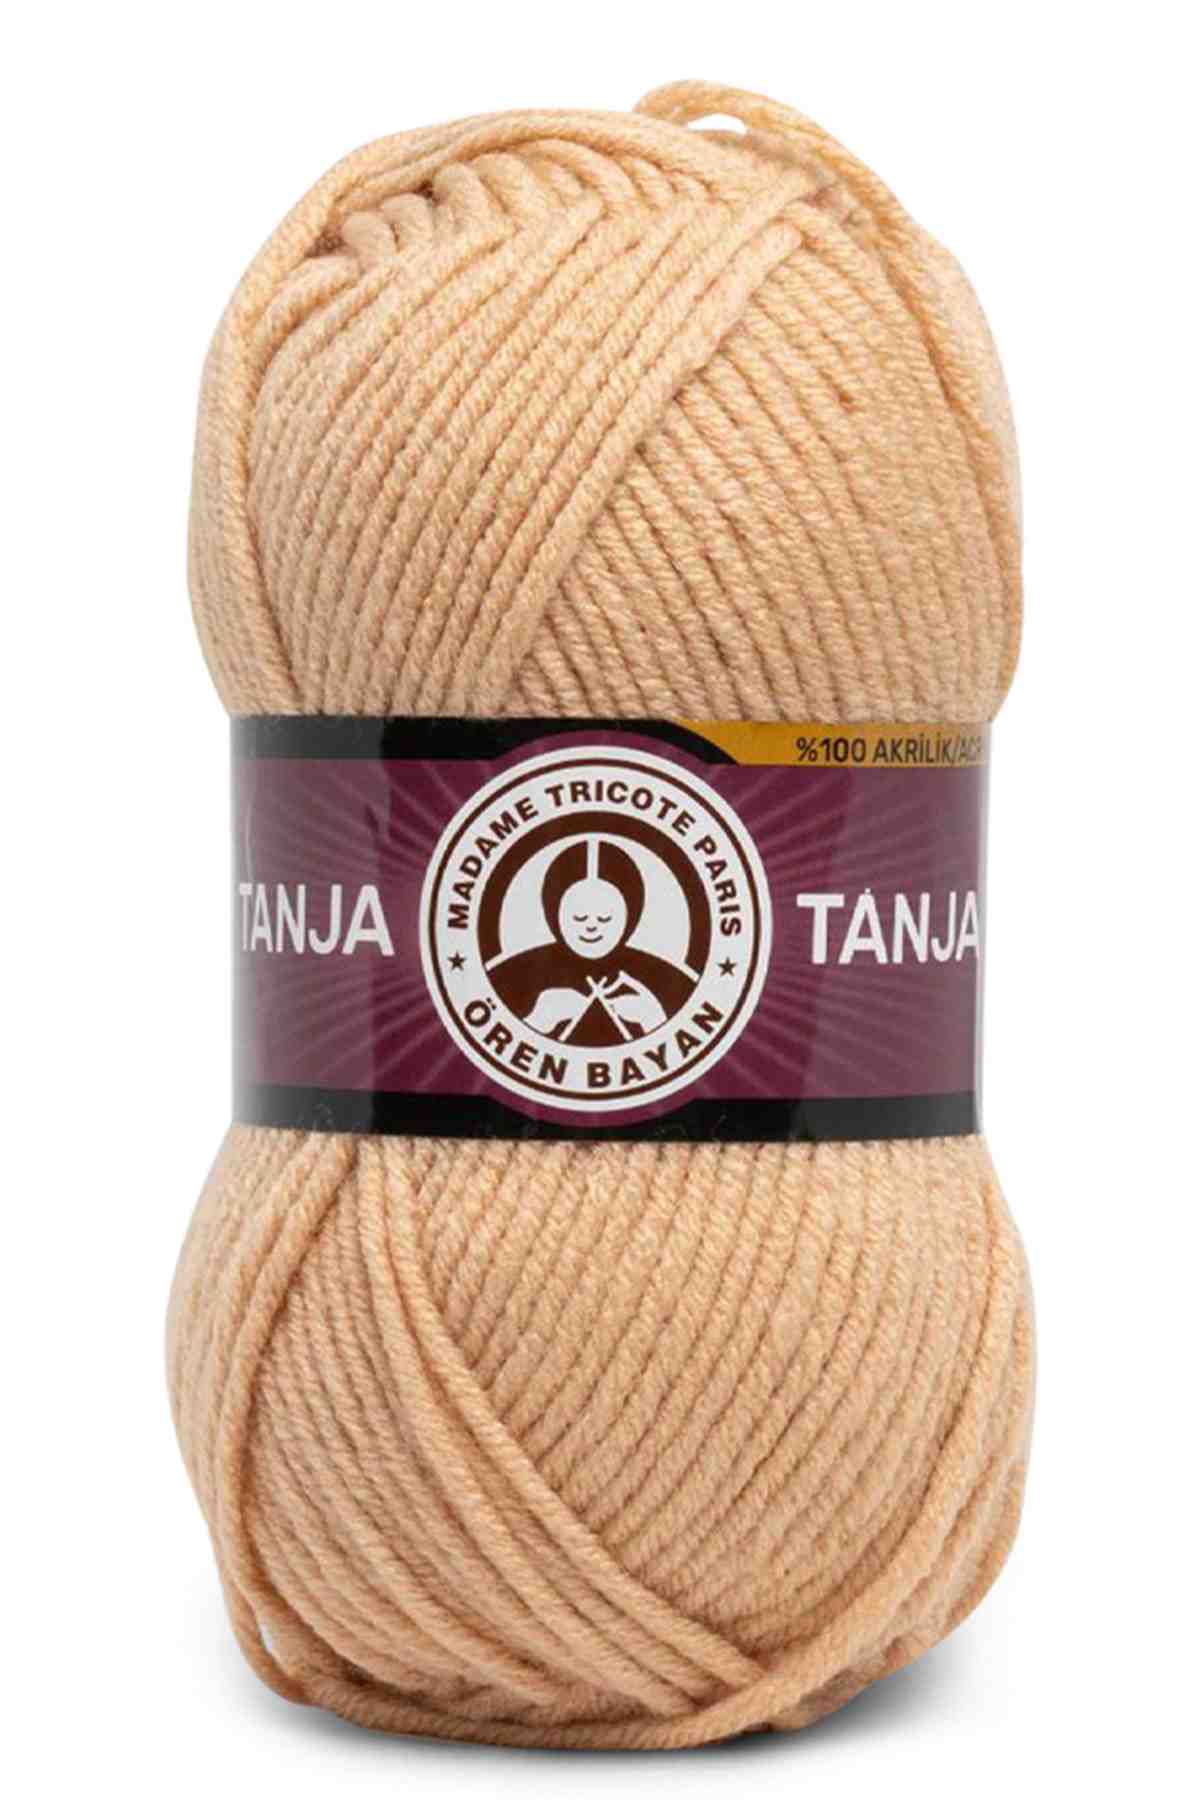 Madame Tricote Paris Tanja Acrylic Yarn